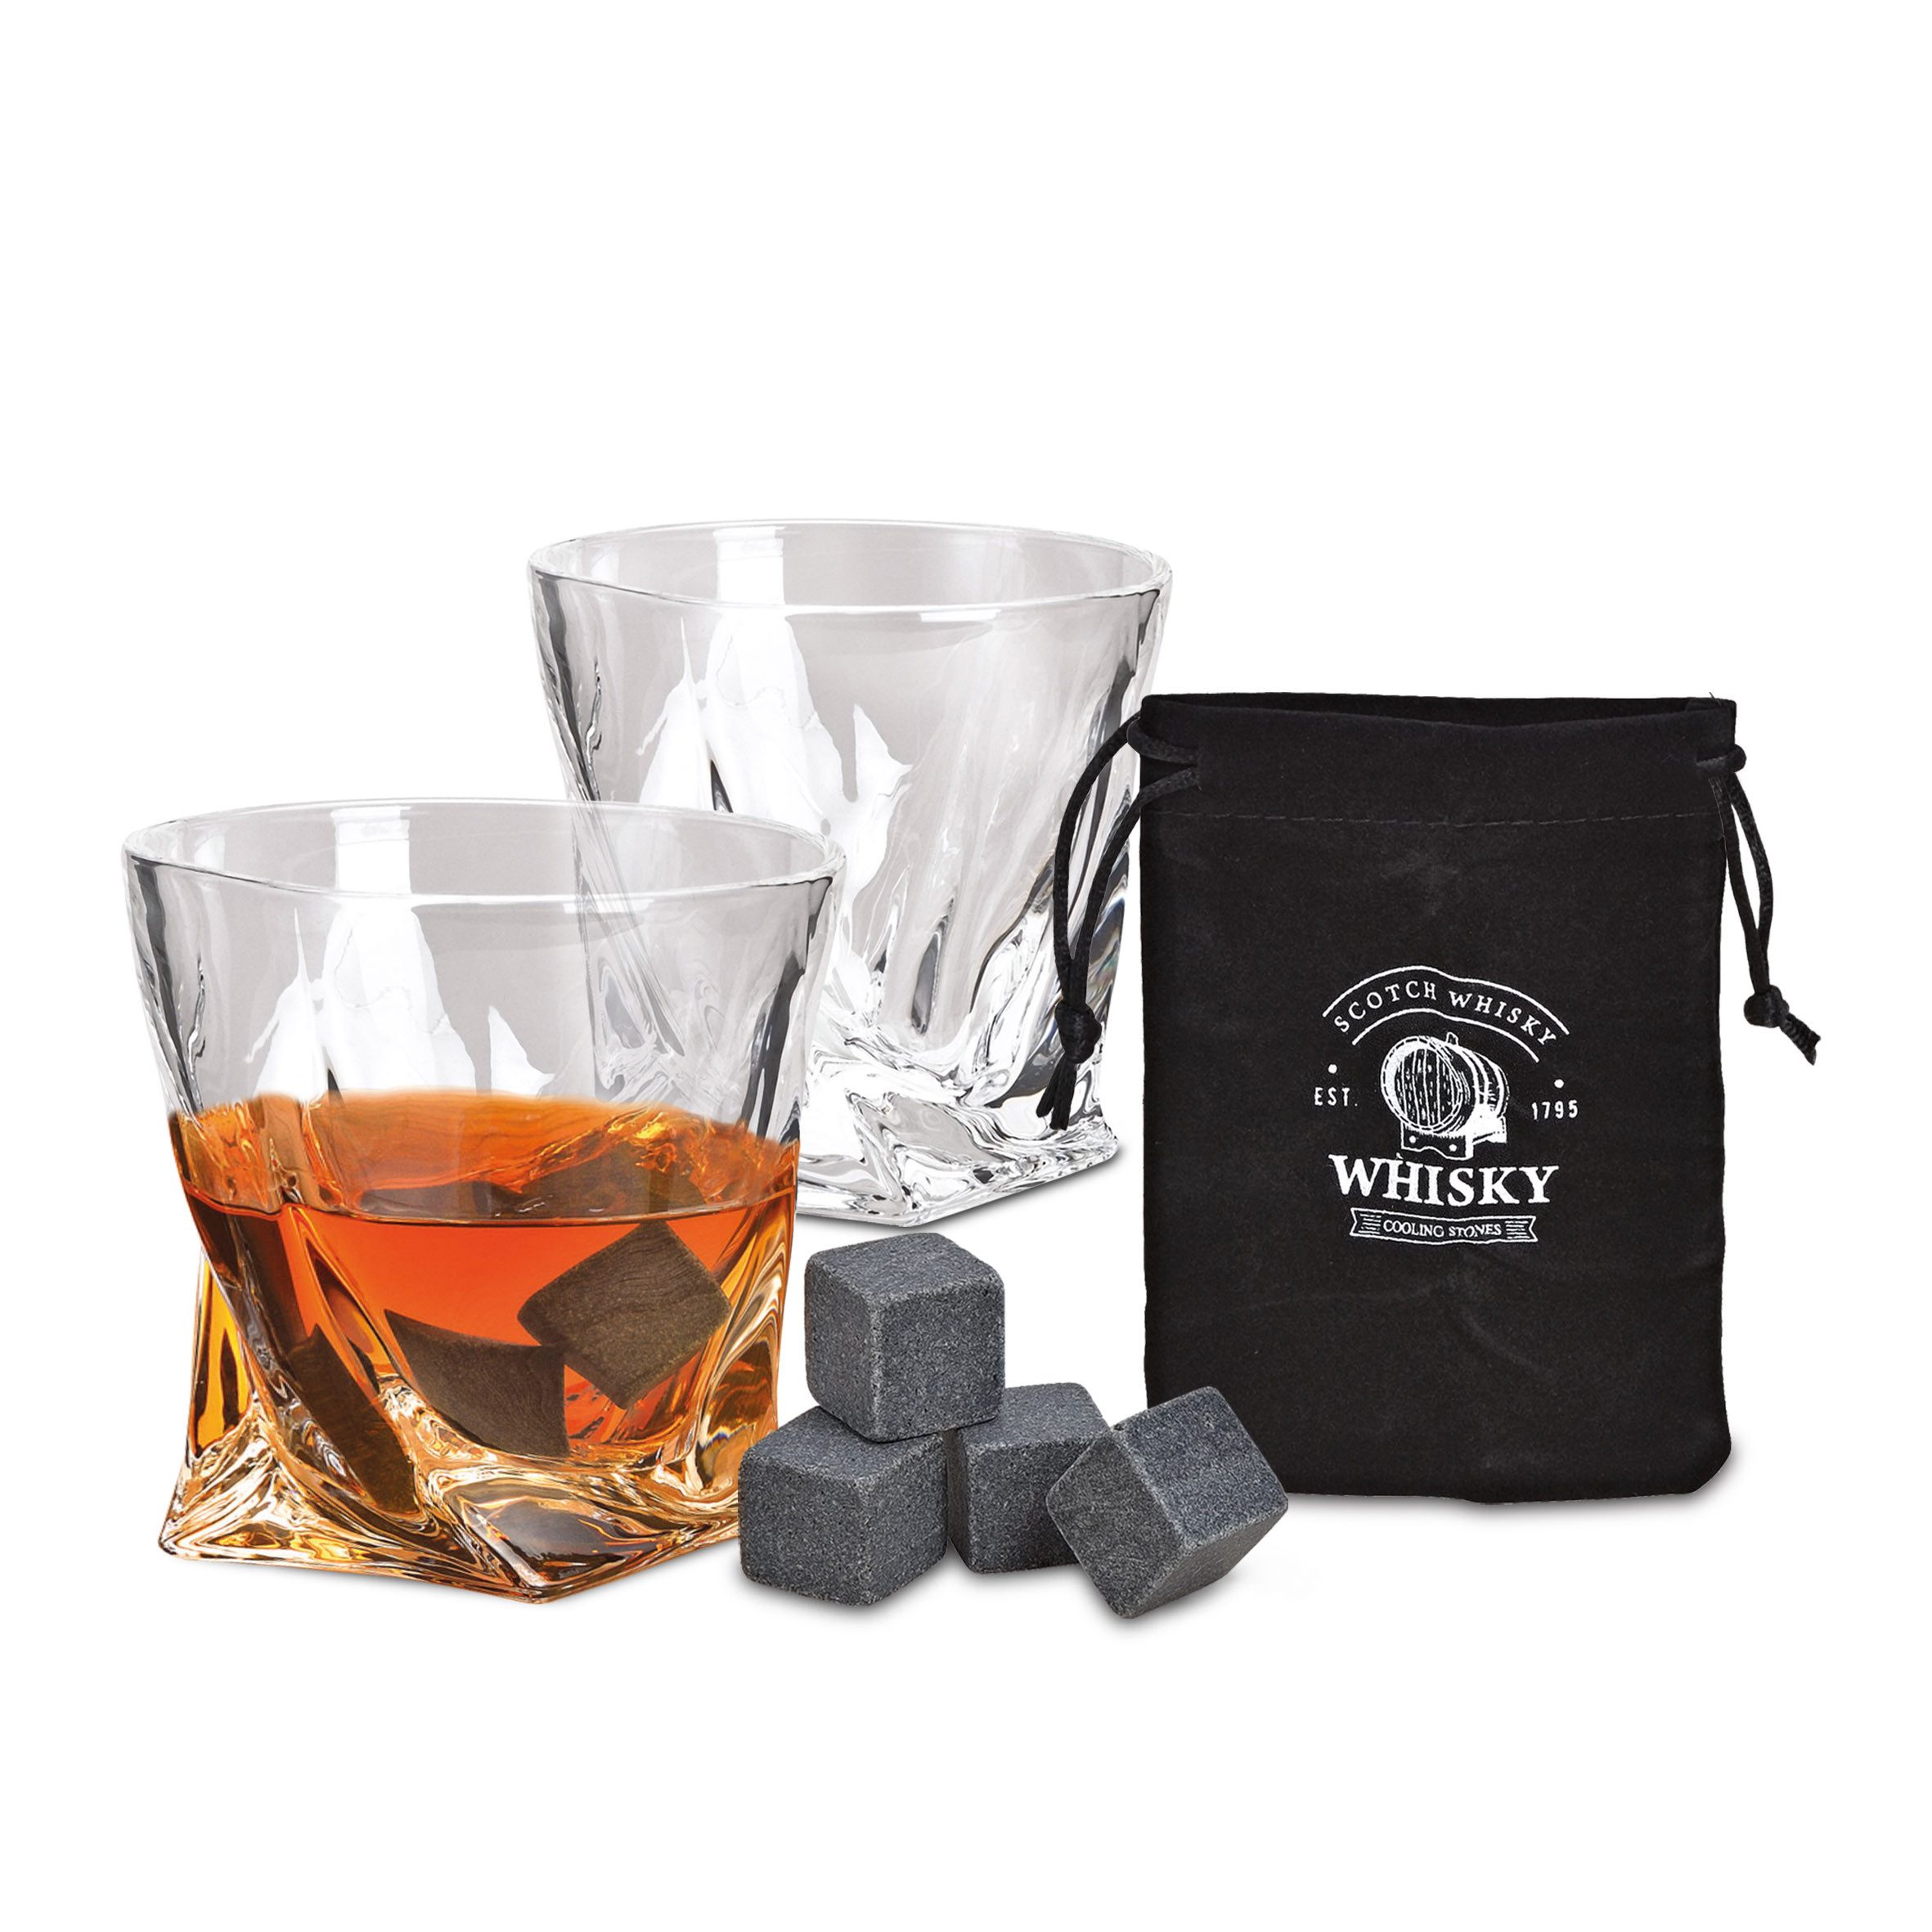 Woma Whiskyglas Whisky Glas Geschenk Set aus Kristallglas - 7-teilig, Kristallglas / Basalt, 2er Trinkglas Set mit 4x Basalt Kühlsteinen und Samtbeutel